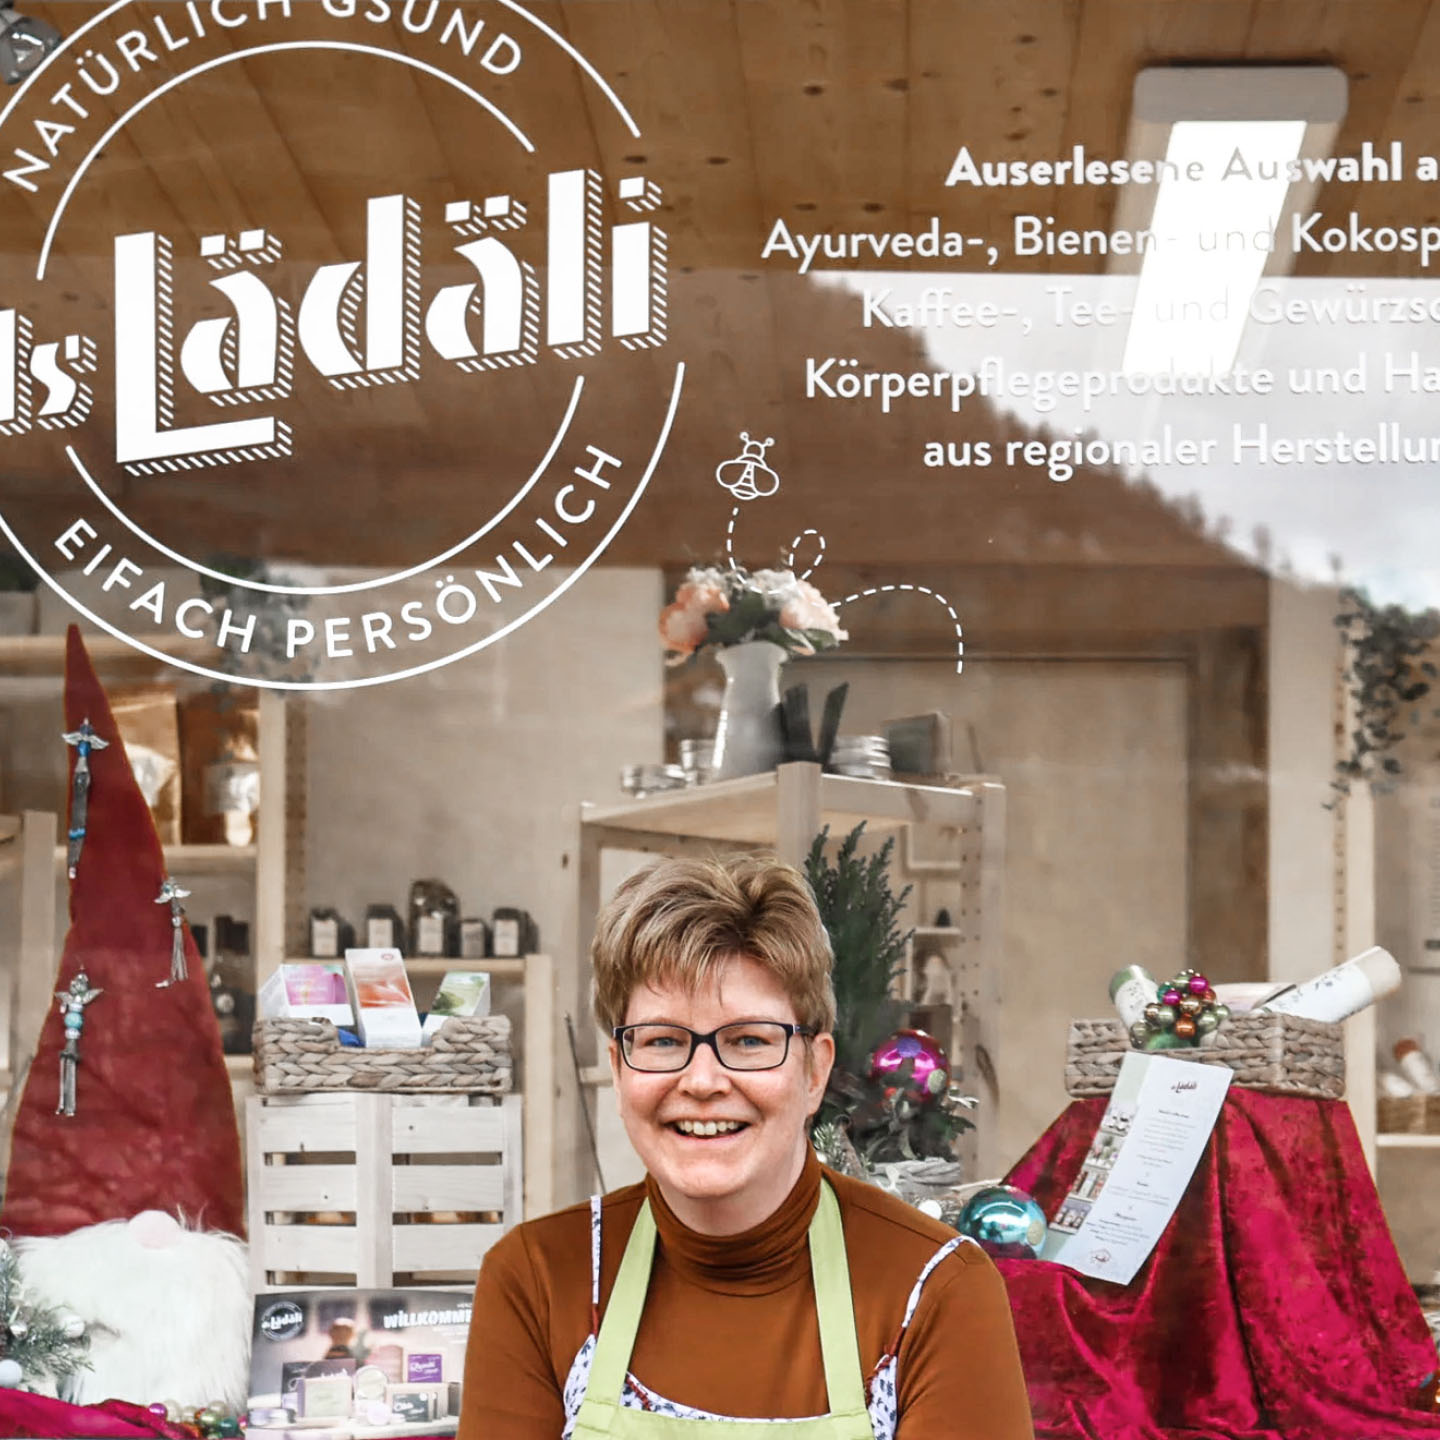 The owner Karin of ds Lädäli